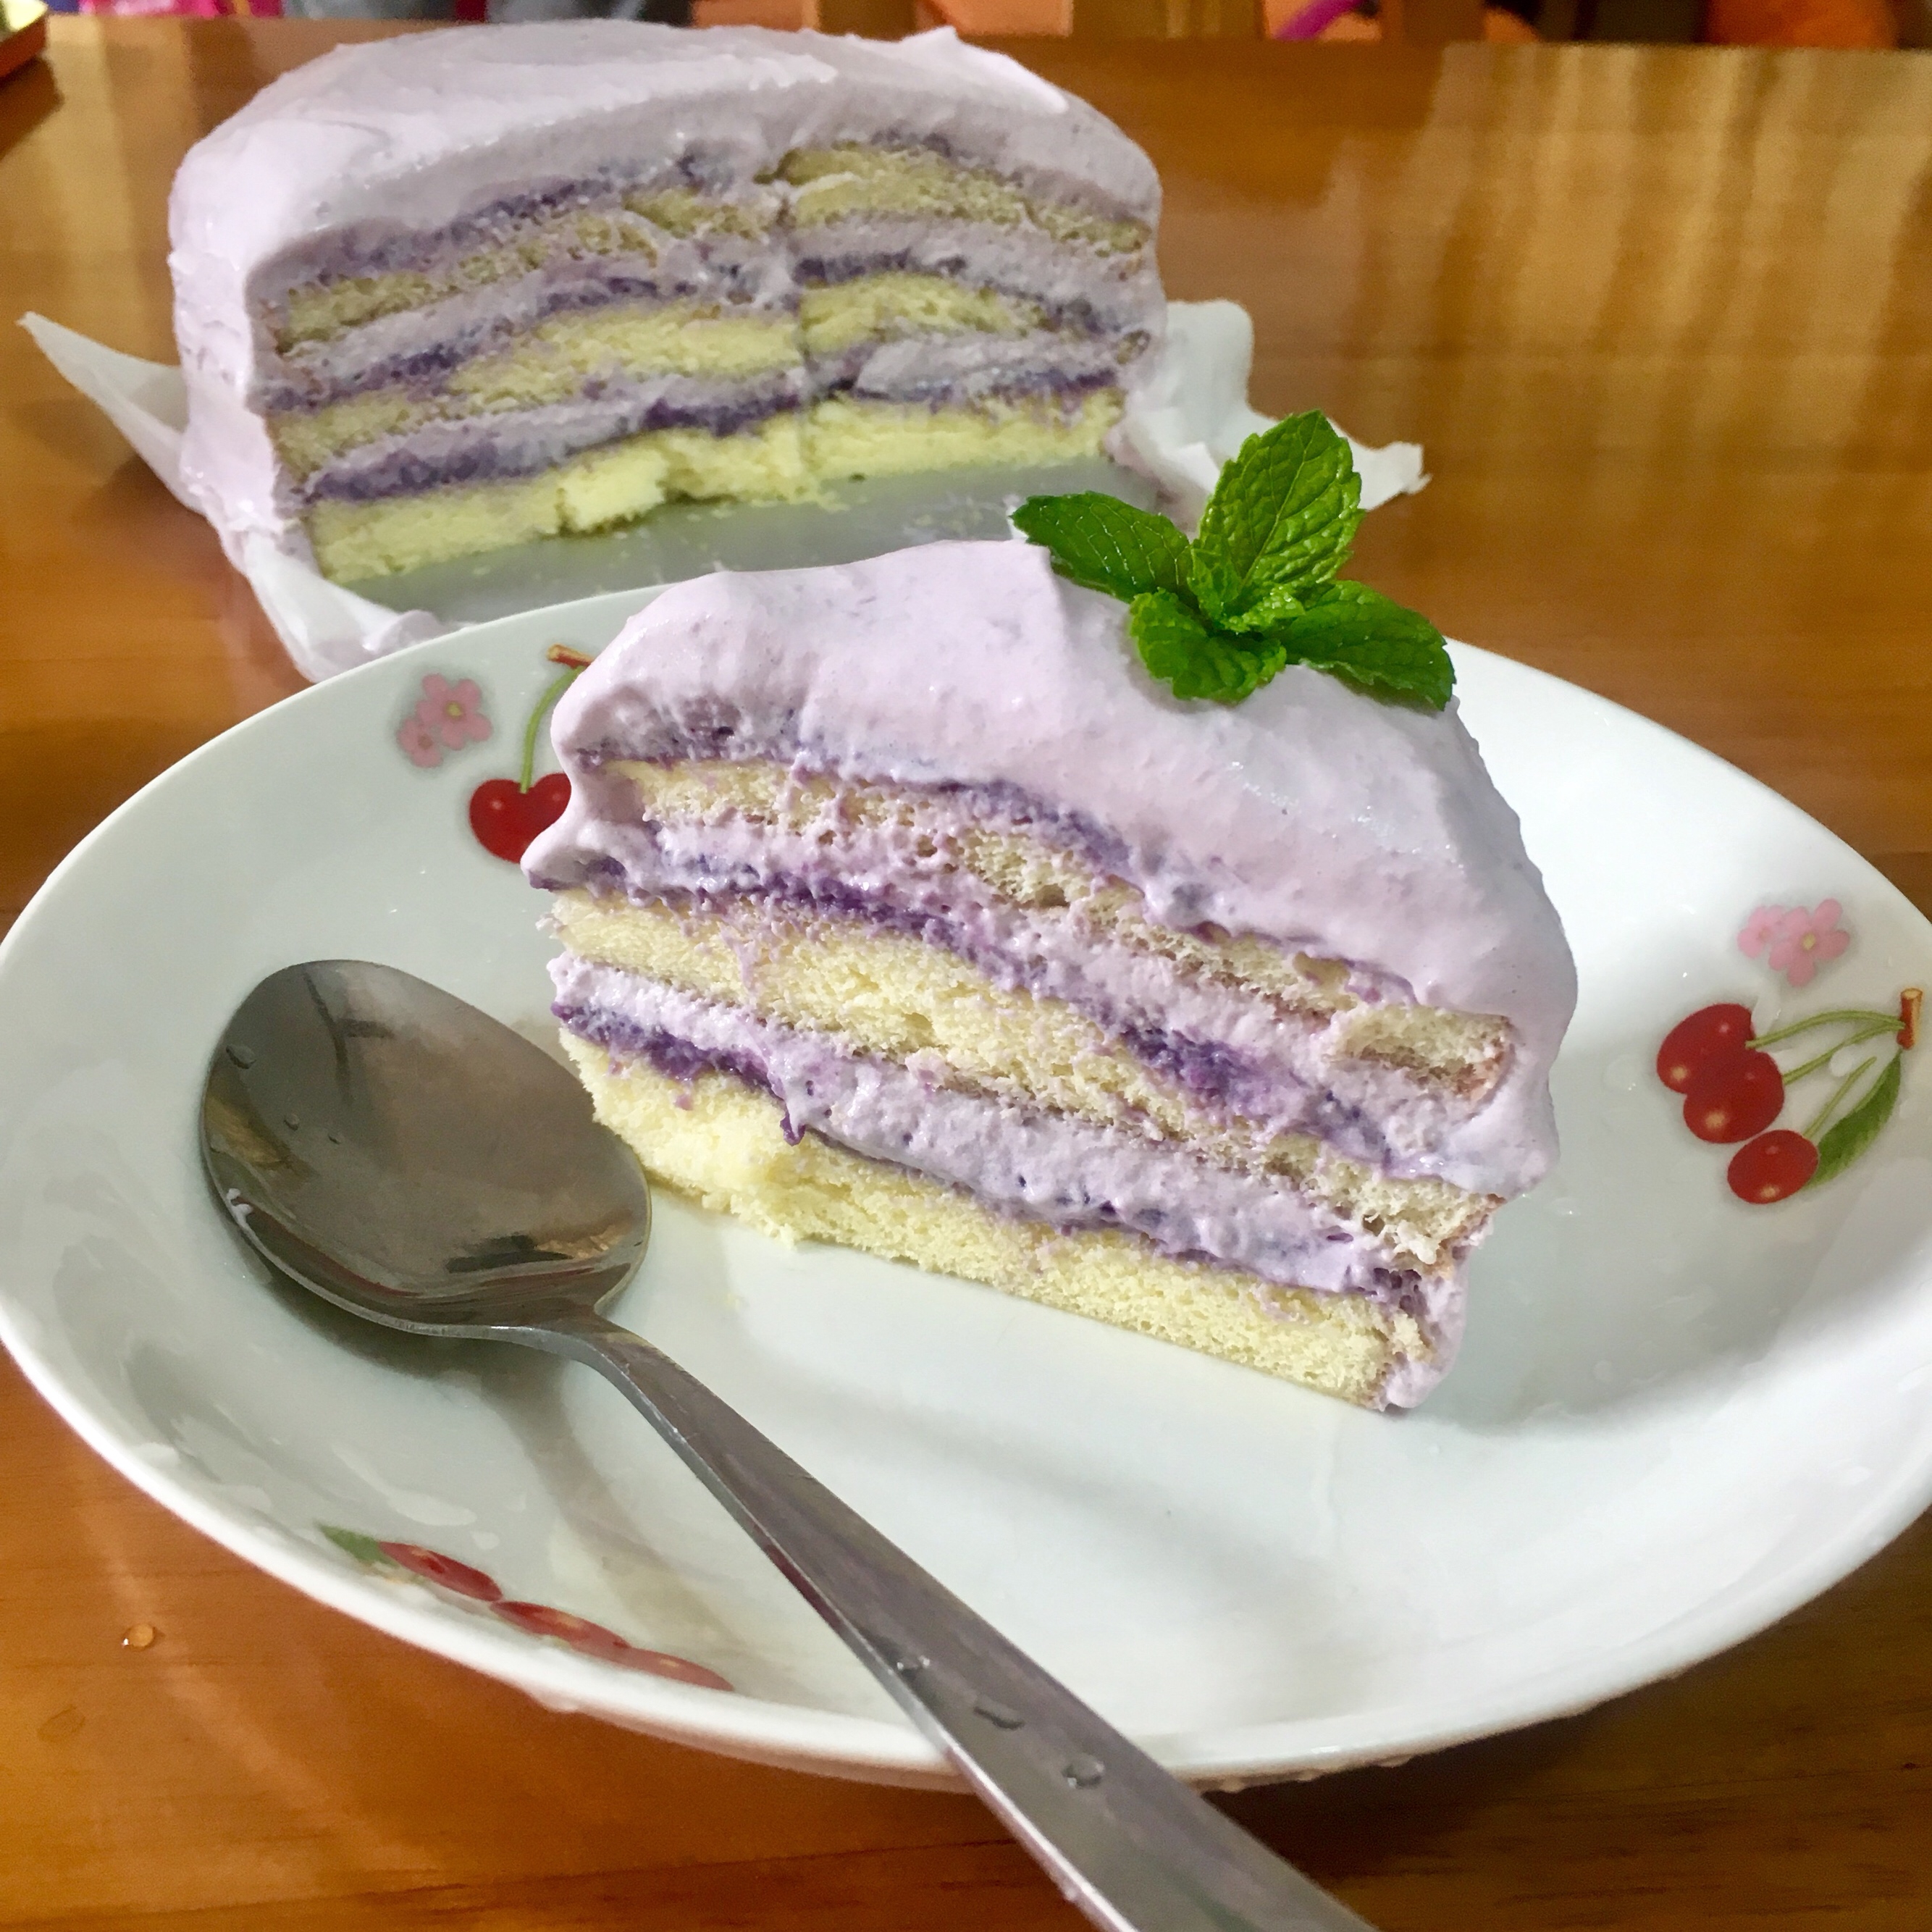 紫薯芋泥蛋糕